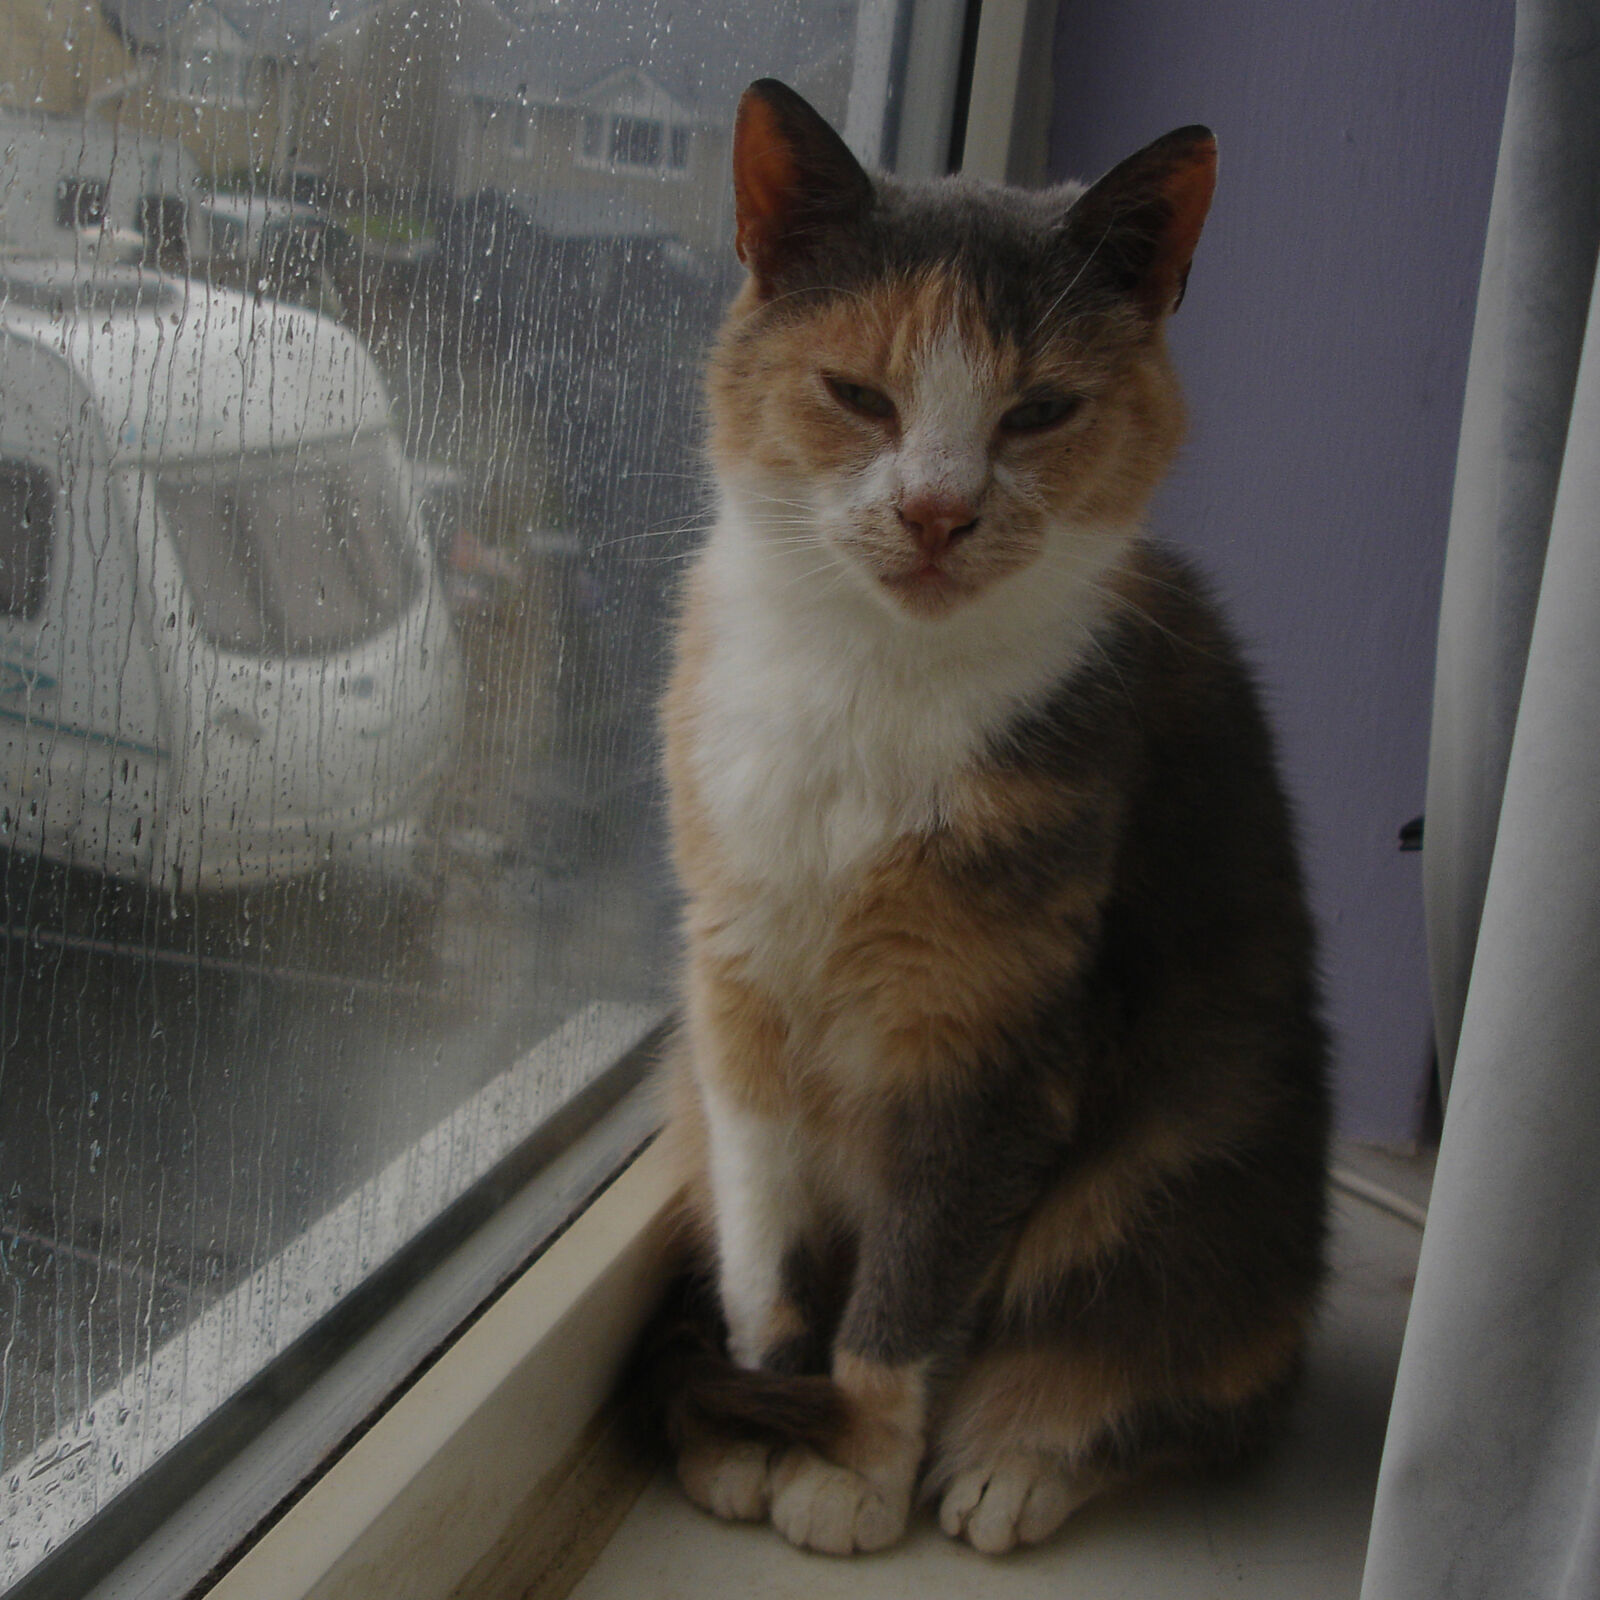 Sony DSC-P200 sample photo. Cat, cat, rainy, day photography